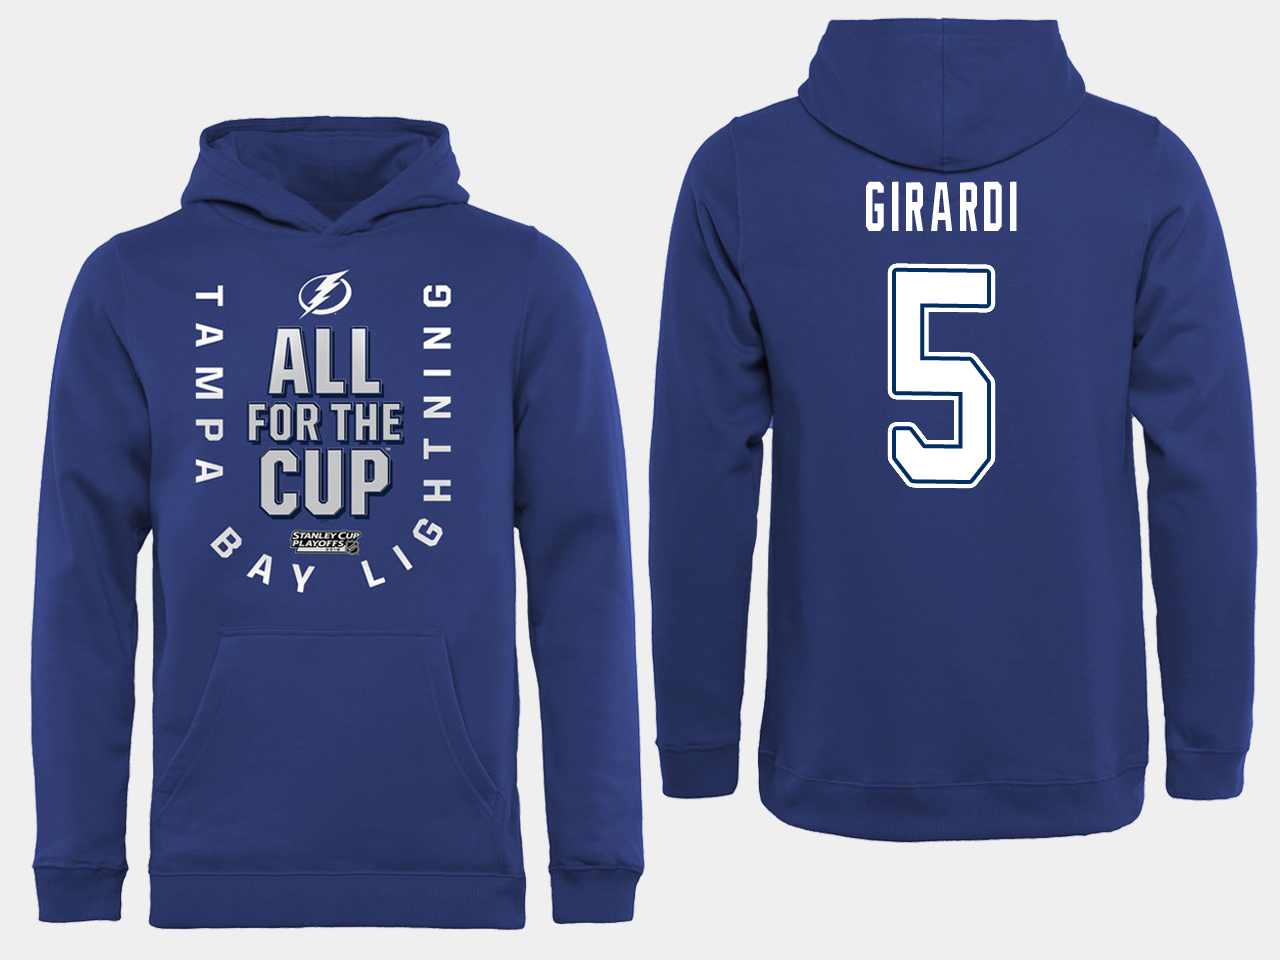 NHL Men adidas Tampa Bay Lightning #5 Girardi blue All for the Cup Hoodie->tampa bay lightning->NHL Jersey